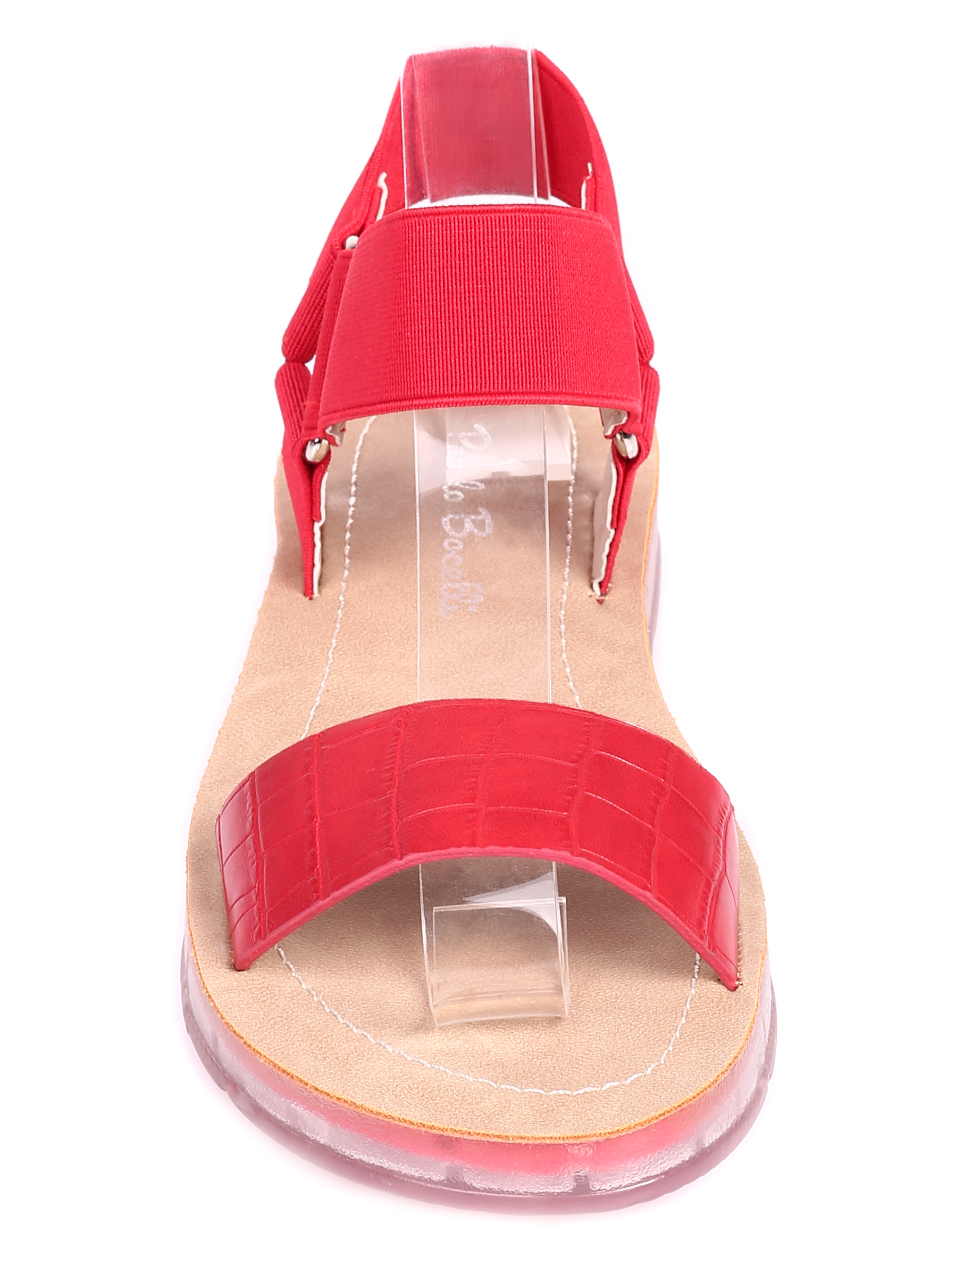 Ежедневни дамски равни сандали в червено 4D-20413 red